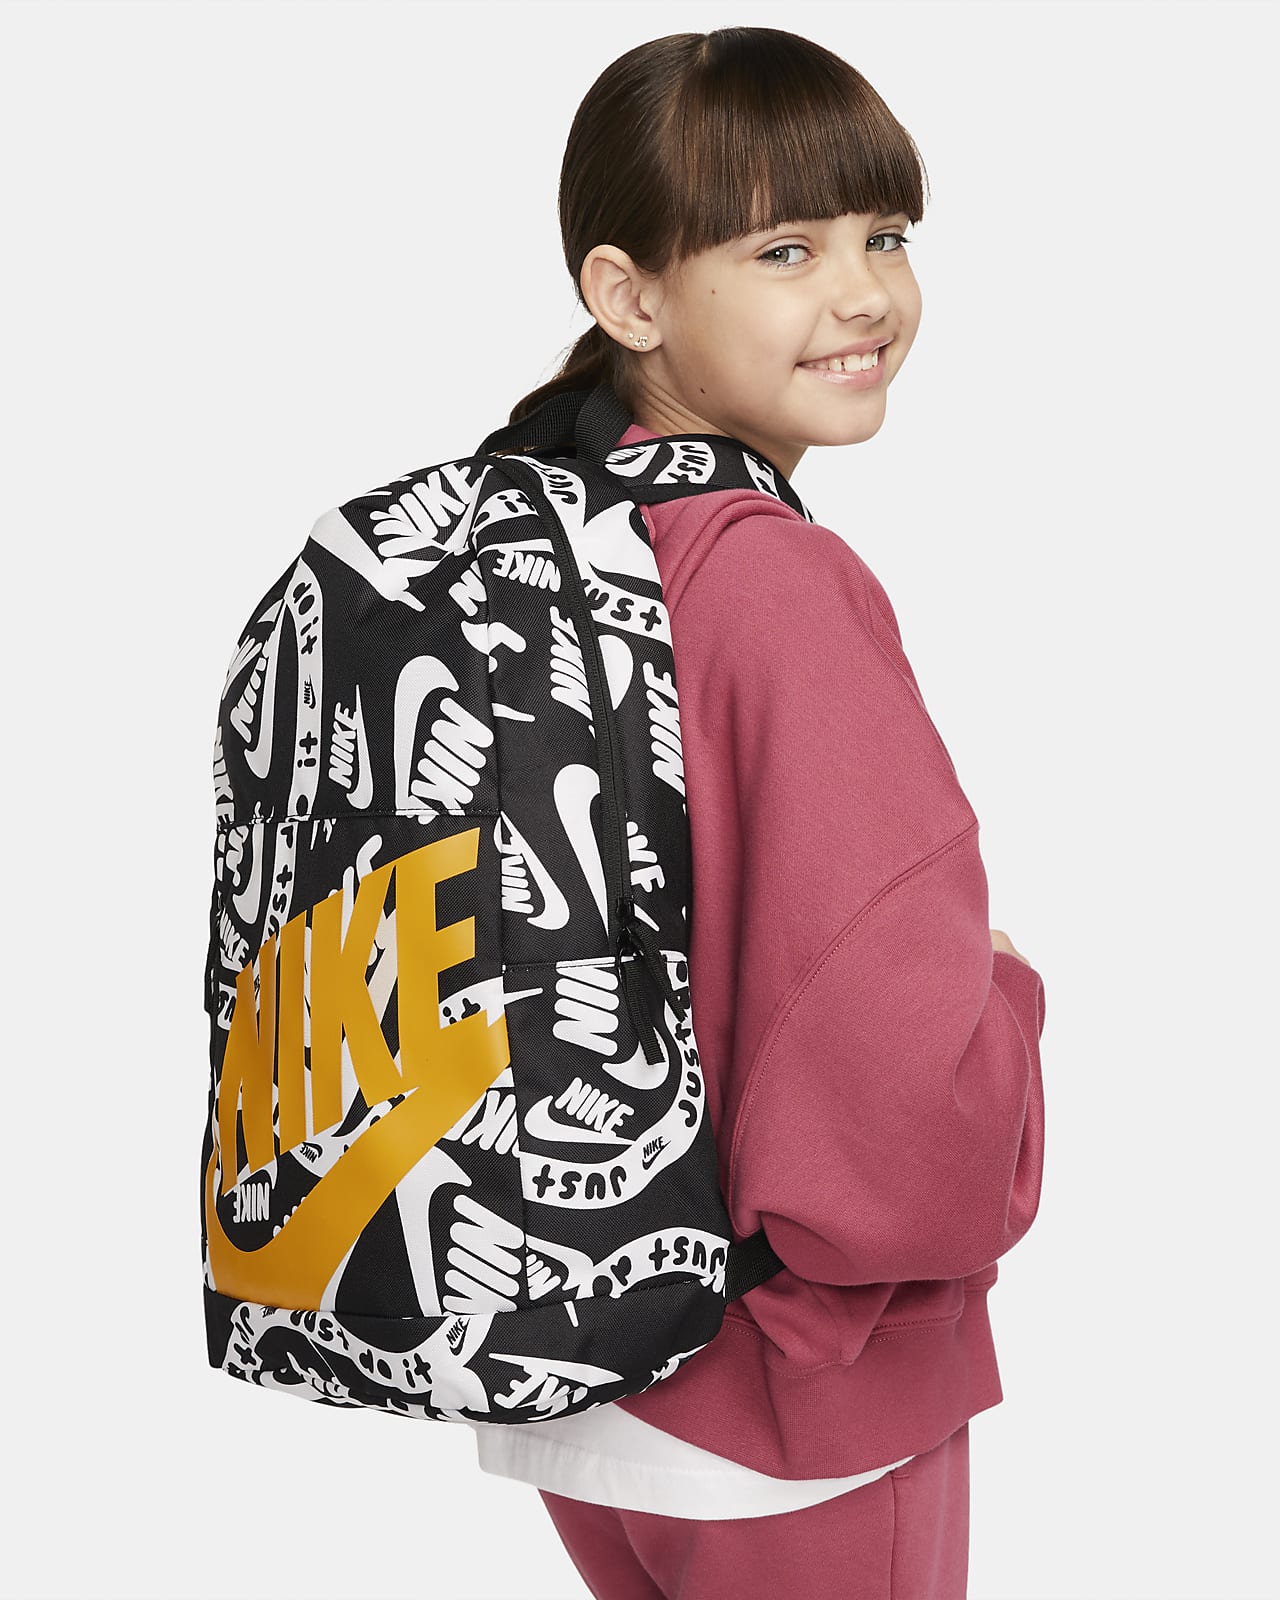 Nike Elemental Kids' Backpack Nike JP